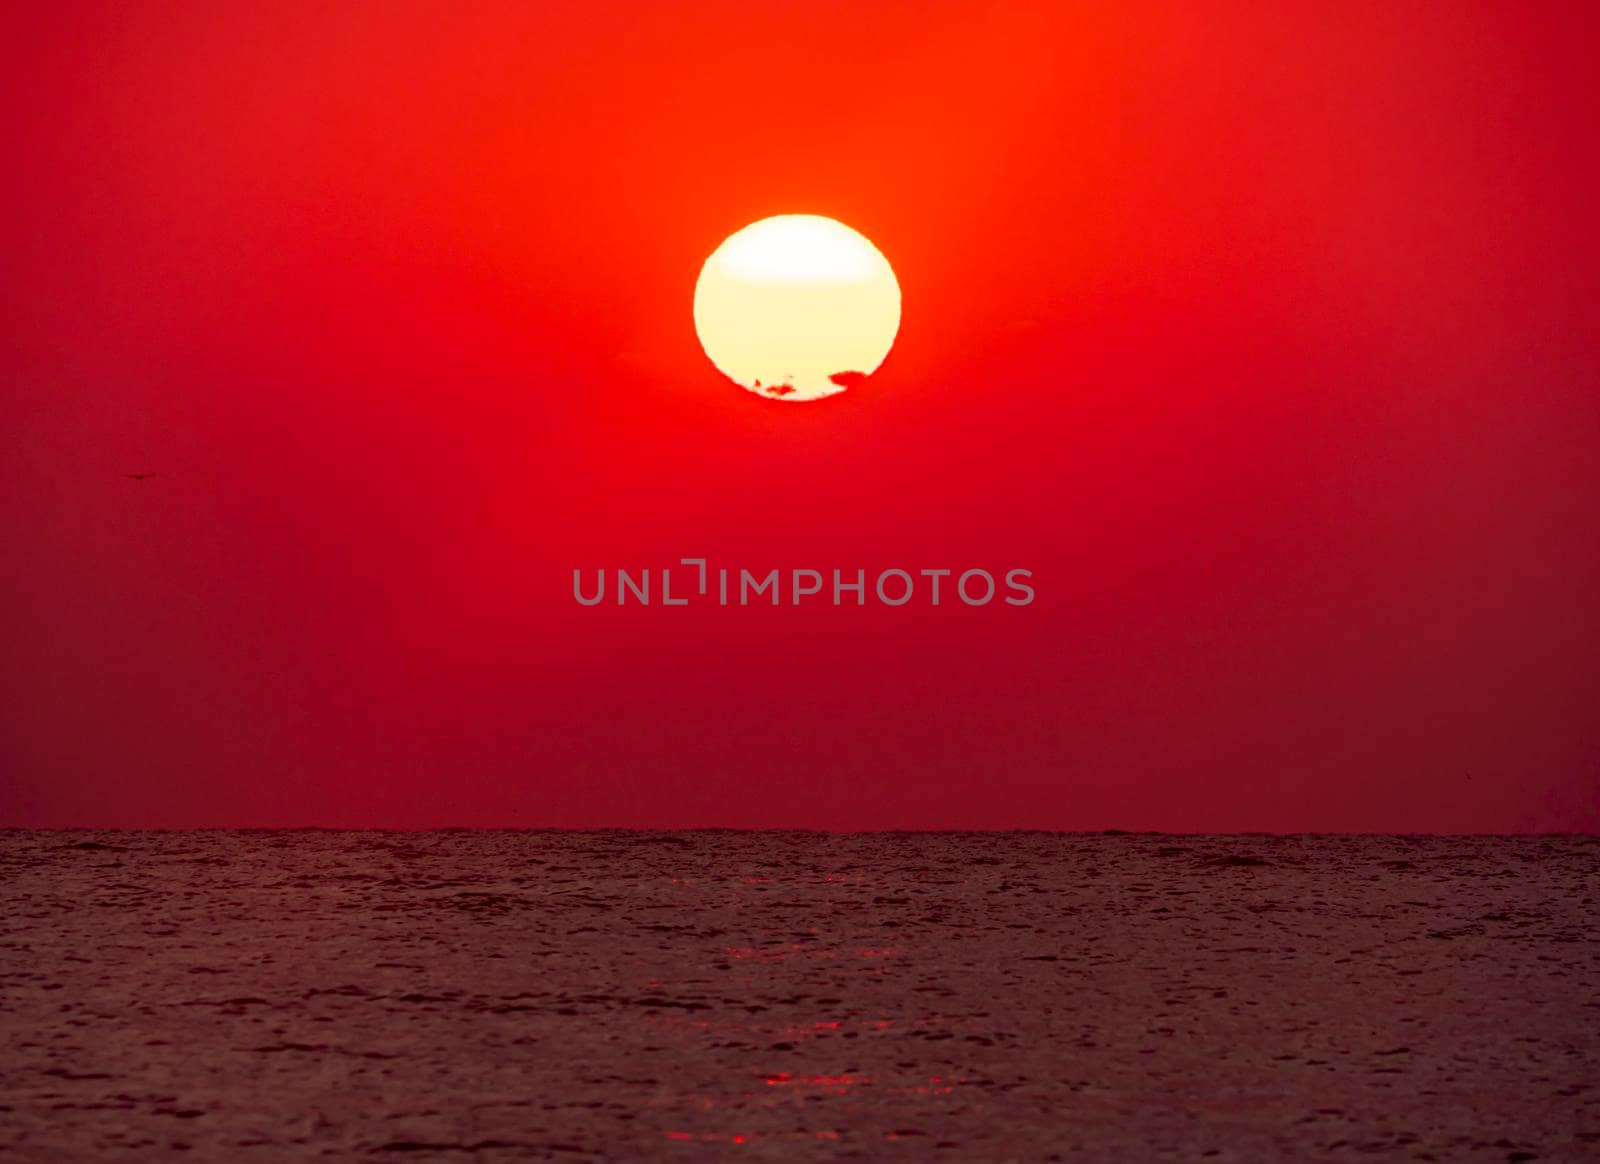 big sun over sea sunrise by alex_nako